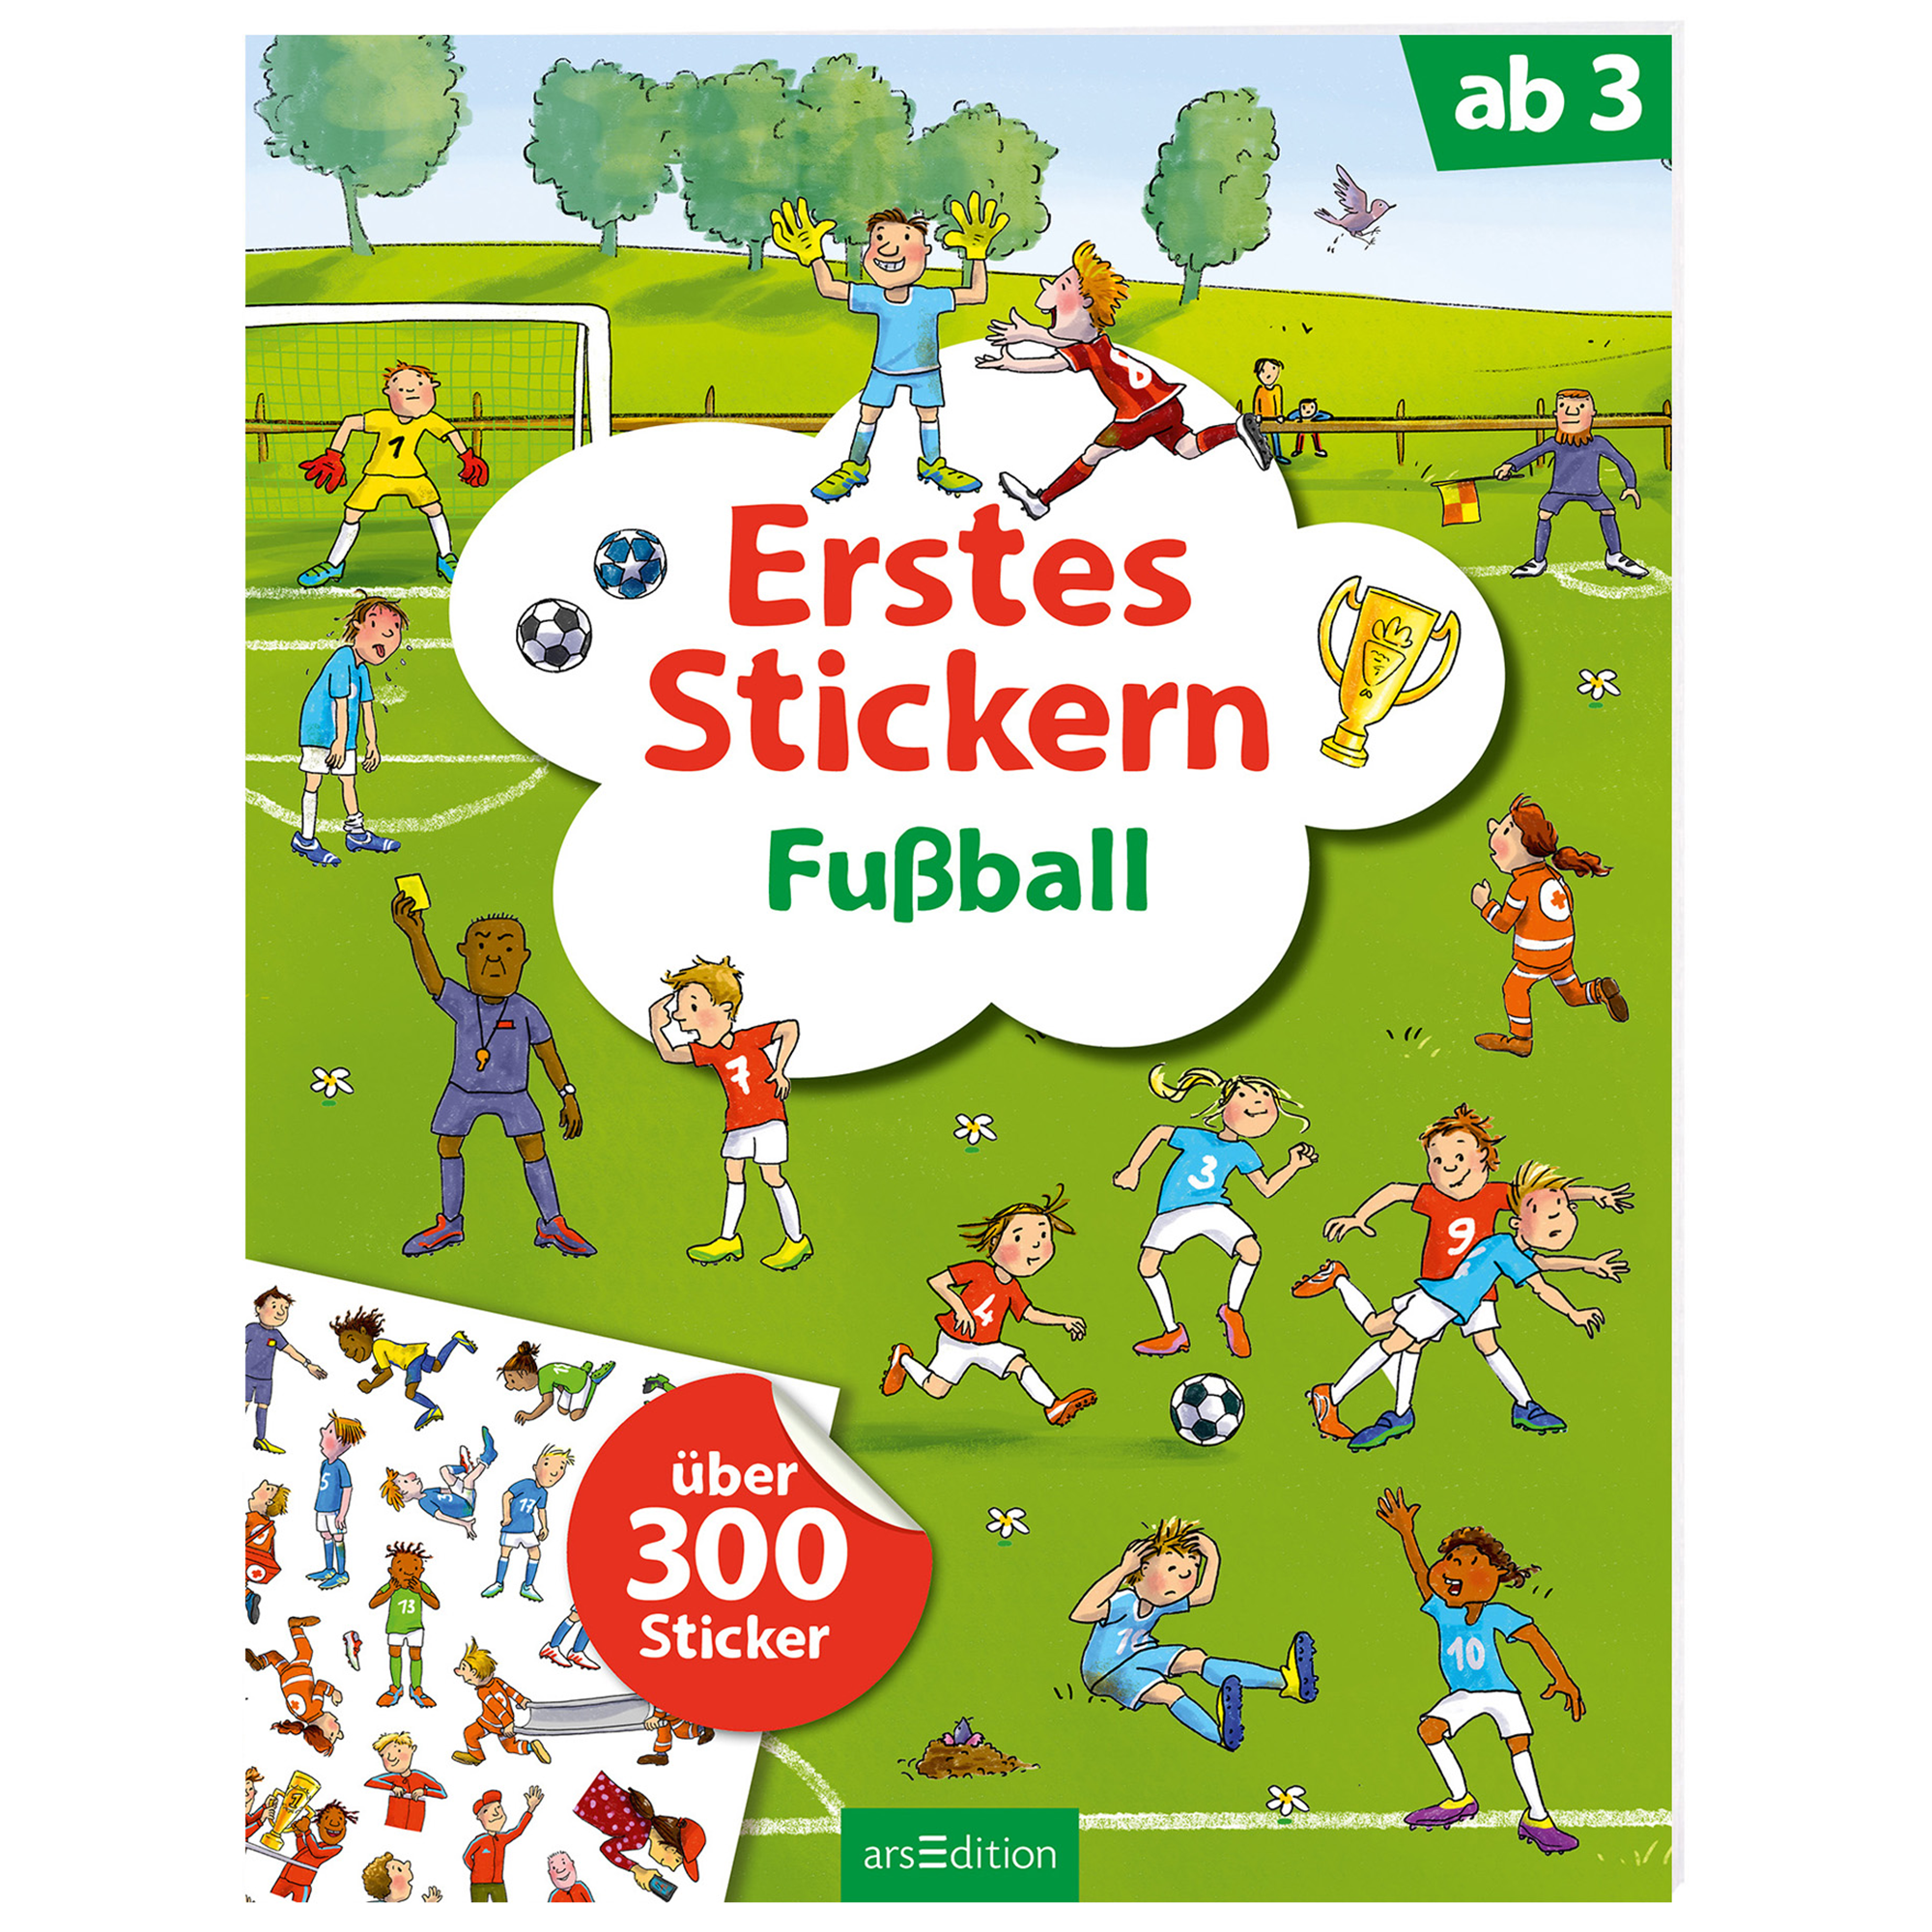 Erstes Stickern – Fußball arsEdition 2000576422983 1